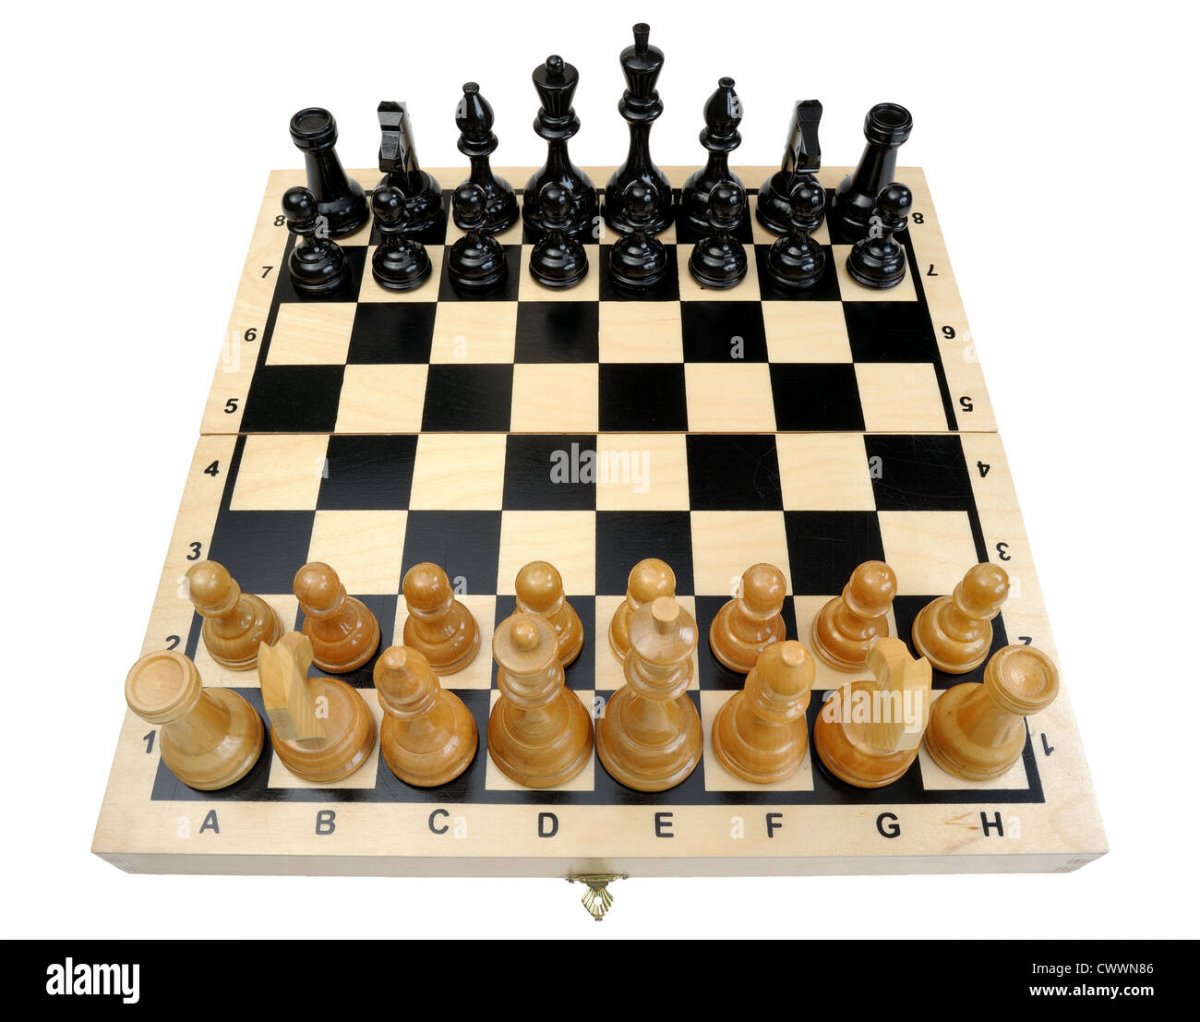 Правильная расстановка шахмат